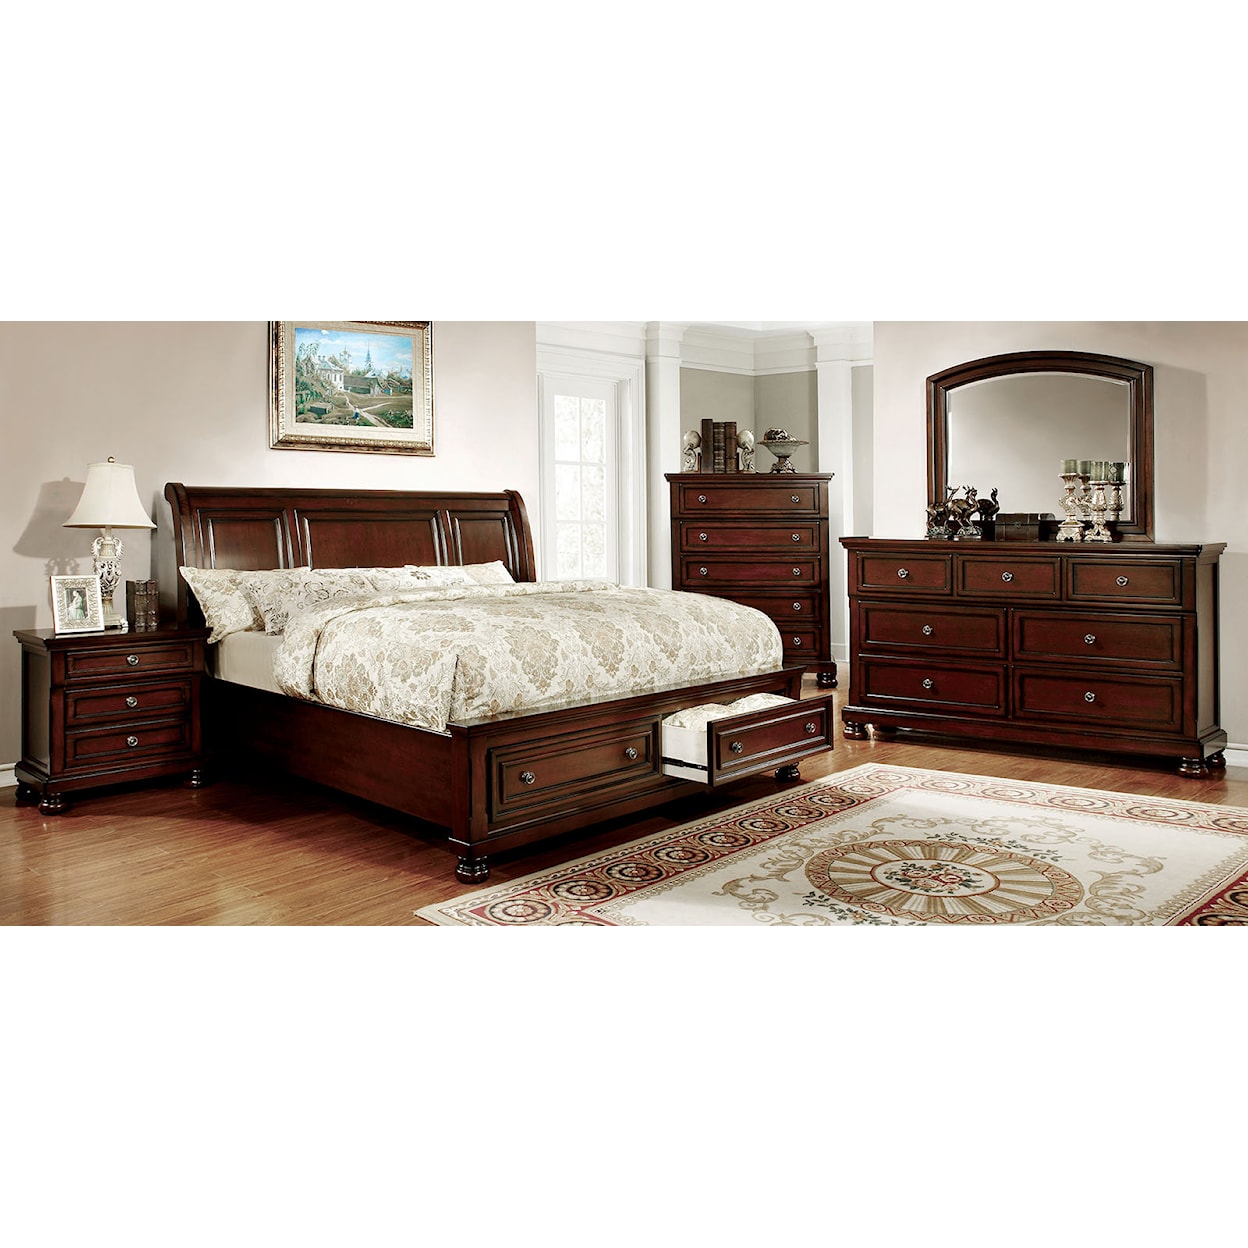 Furniture of America Northville 5-Piece Queen Bedroom Set